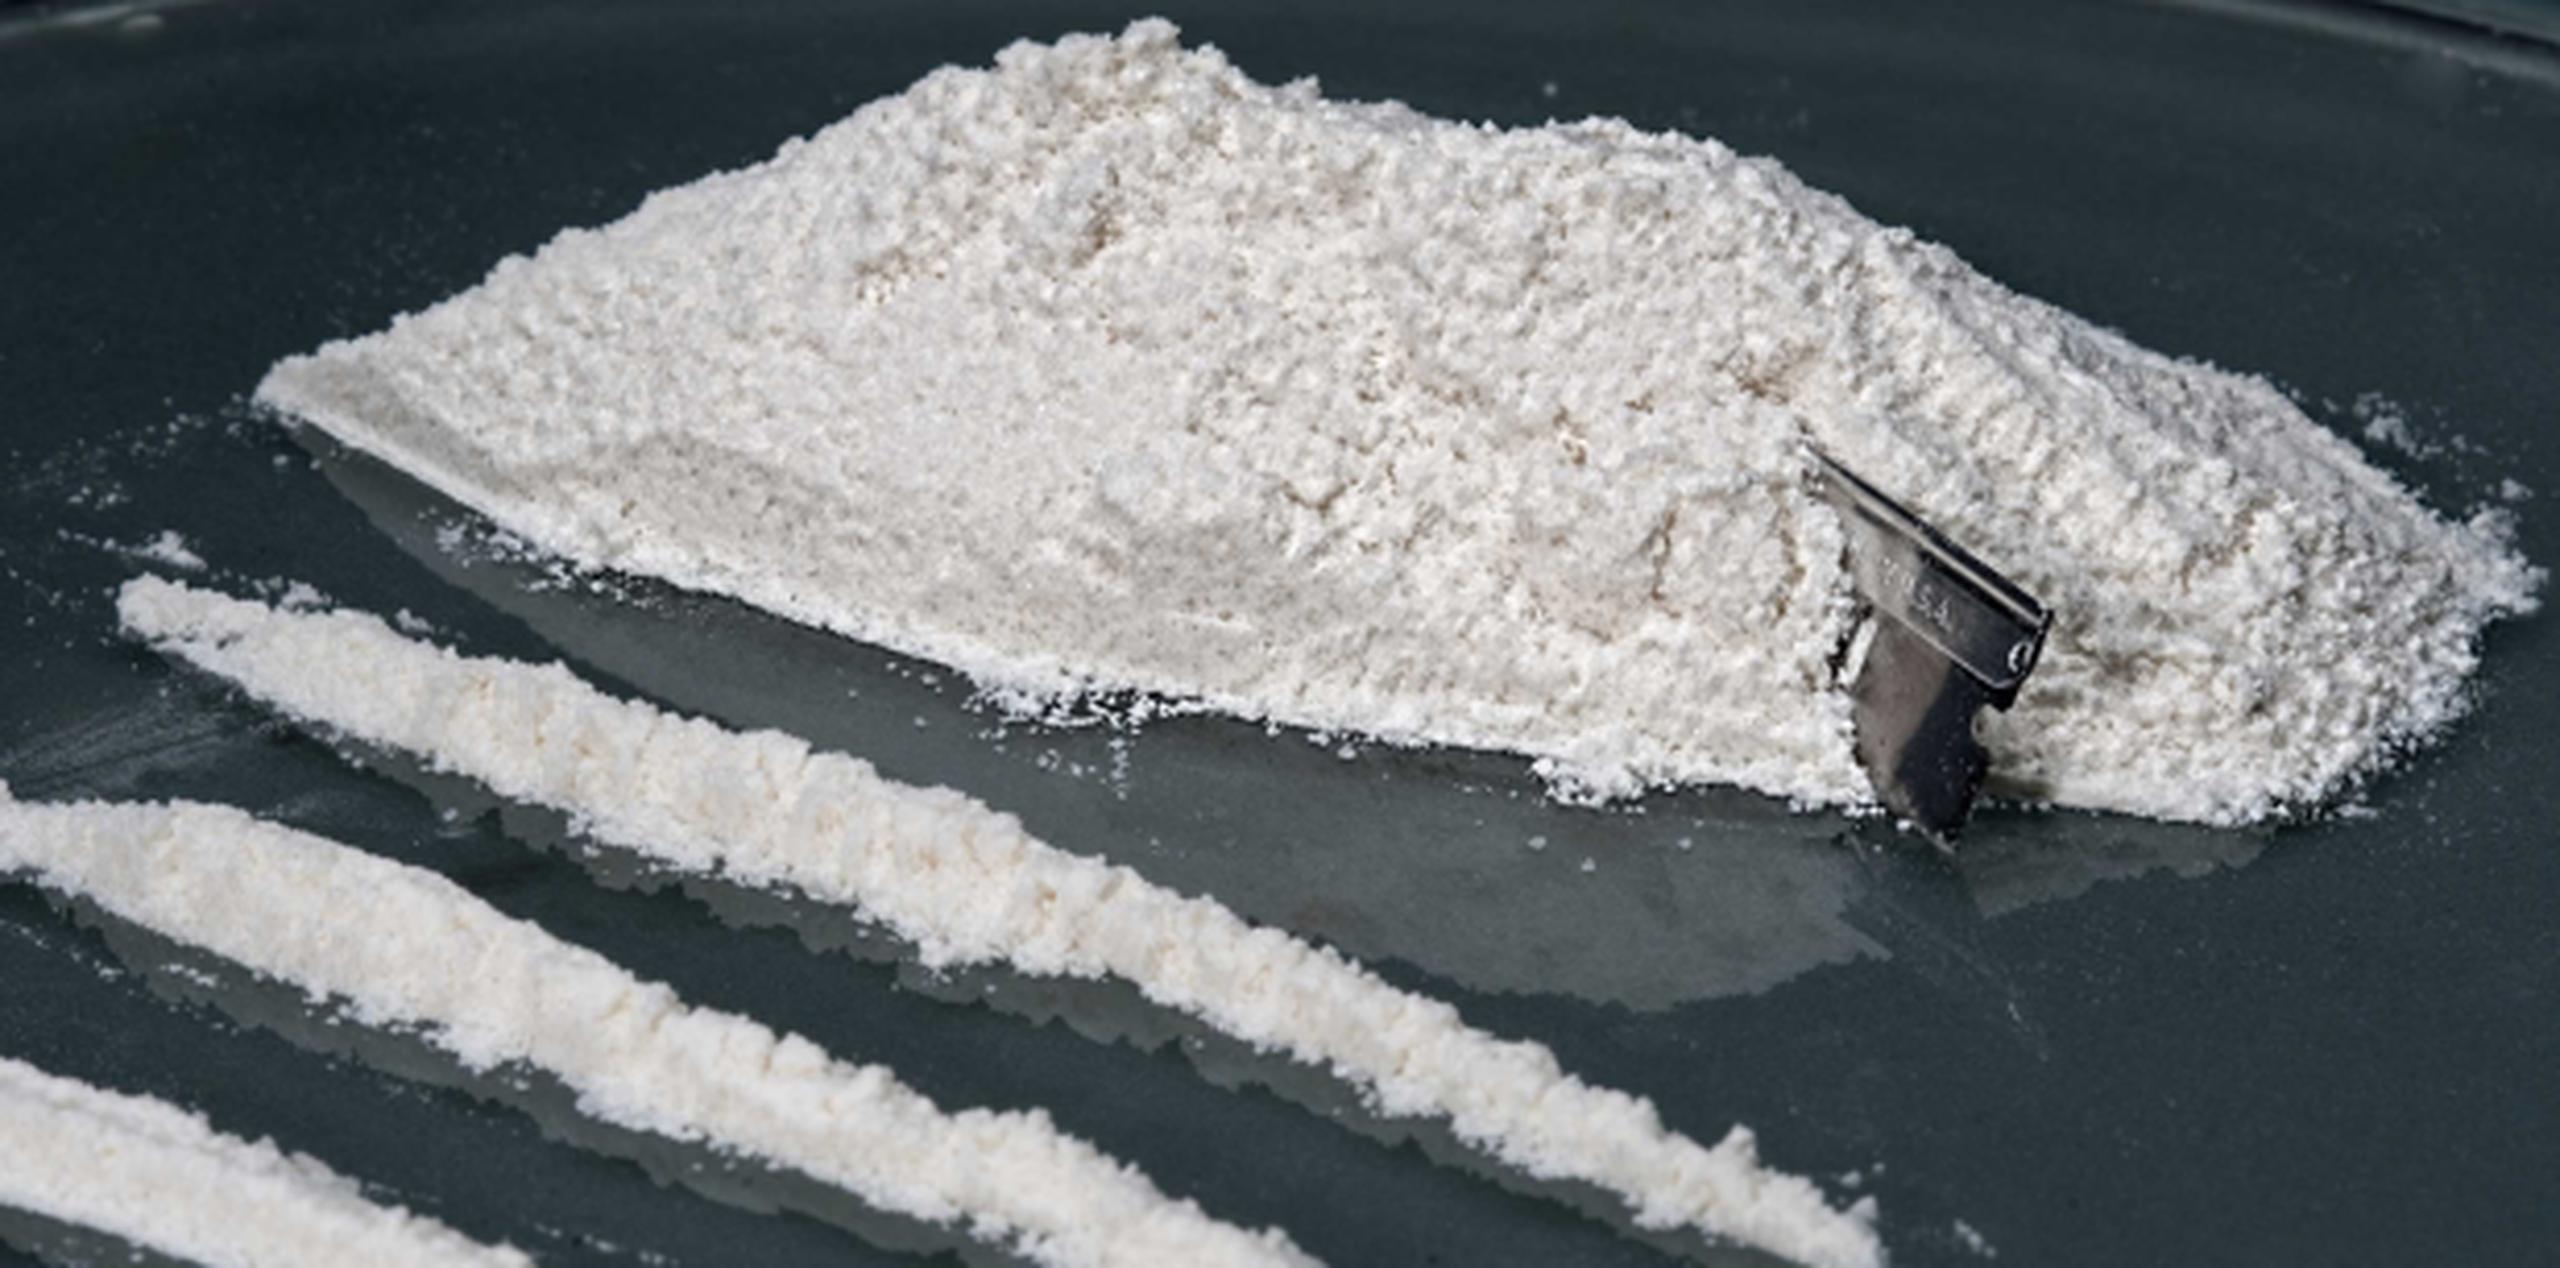 La cocaína, que fue secuestrada en noviembre del año pasado, estaba en 3,522 cajas de lámparas de sal. (Archivo)